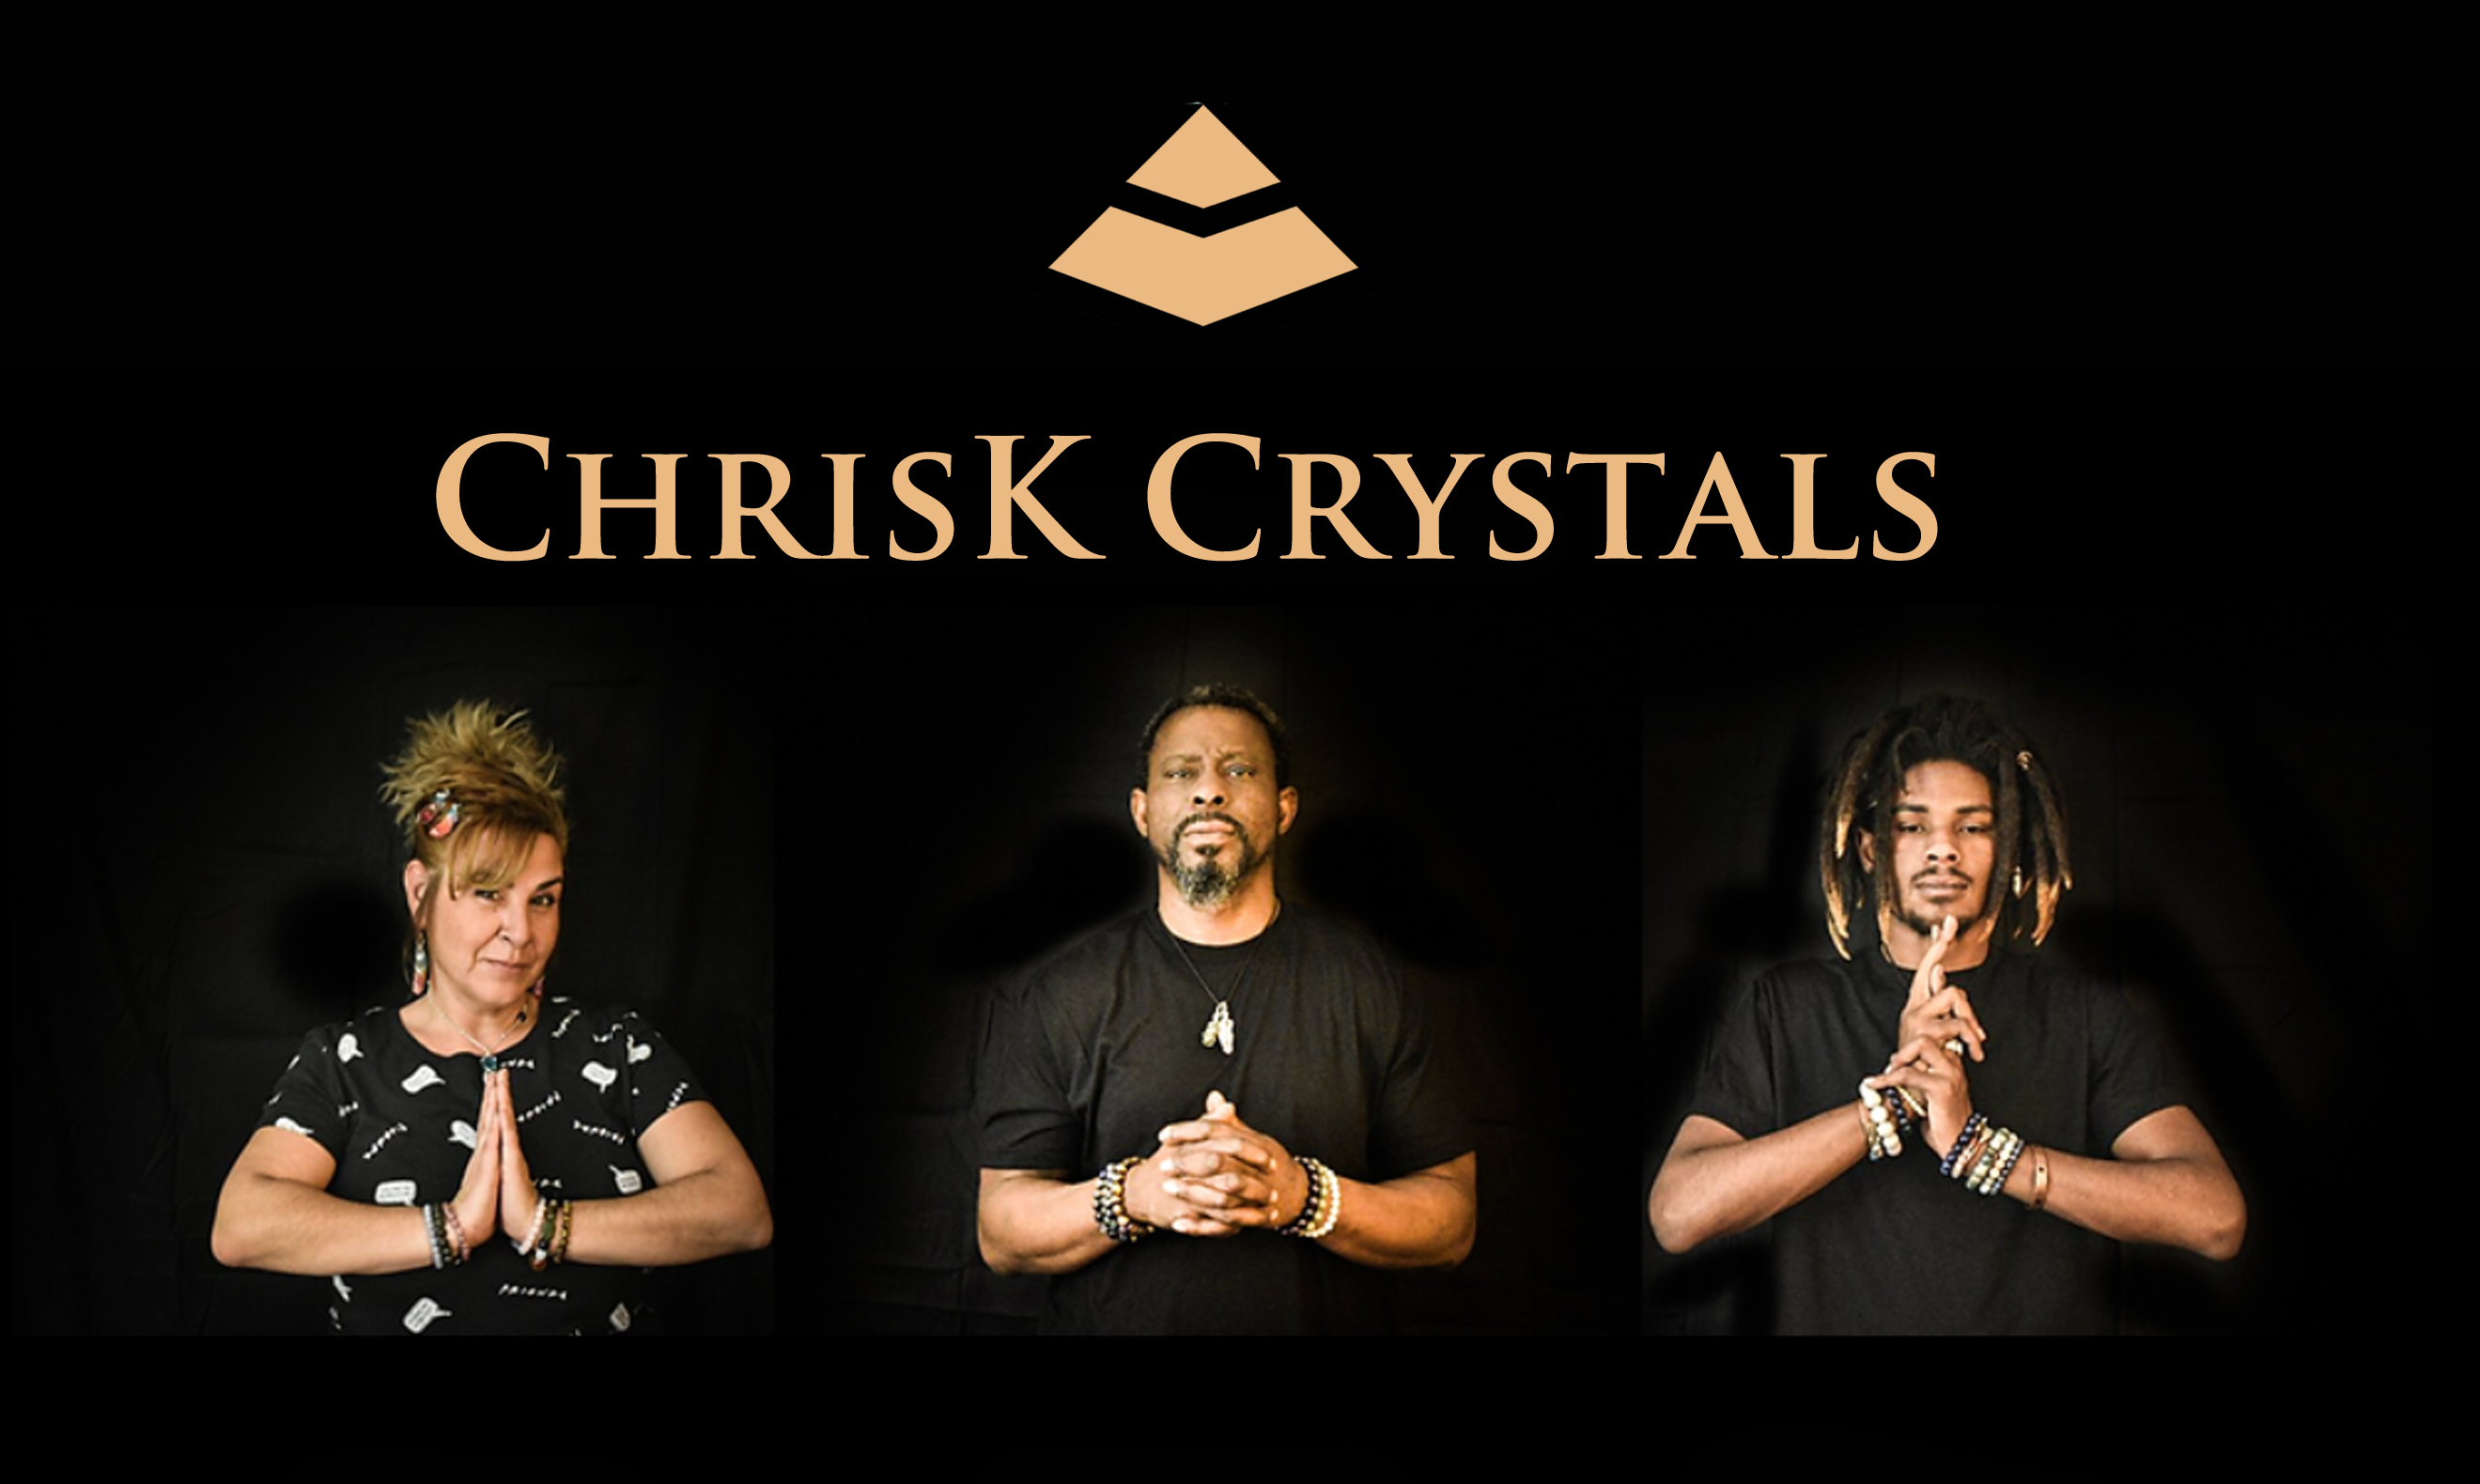 ChrisK Crystals